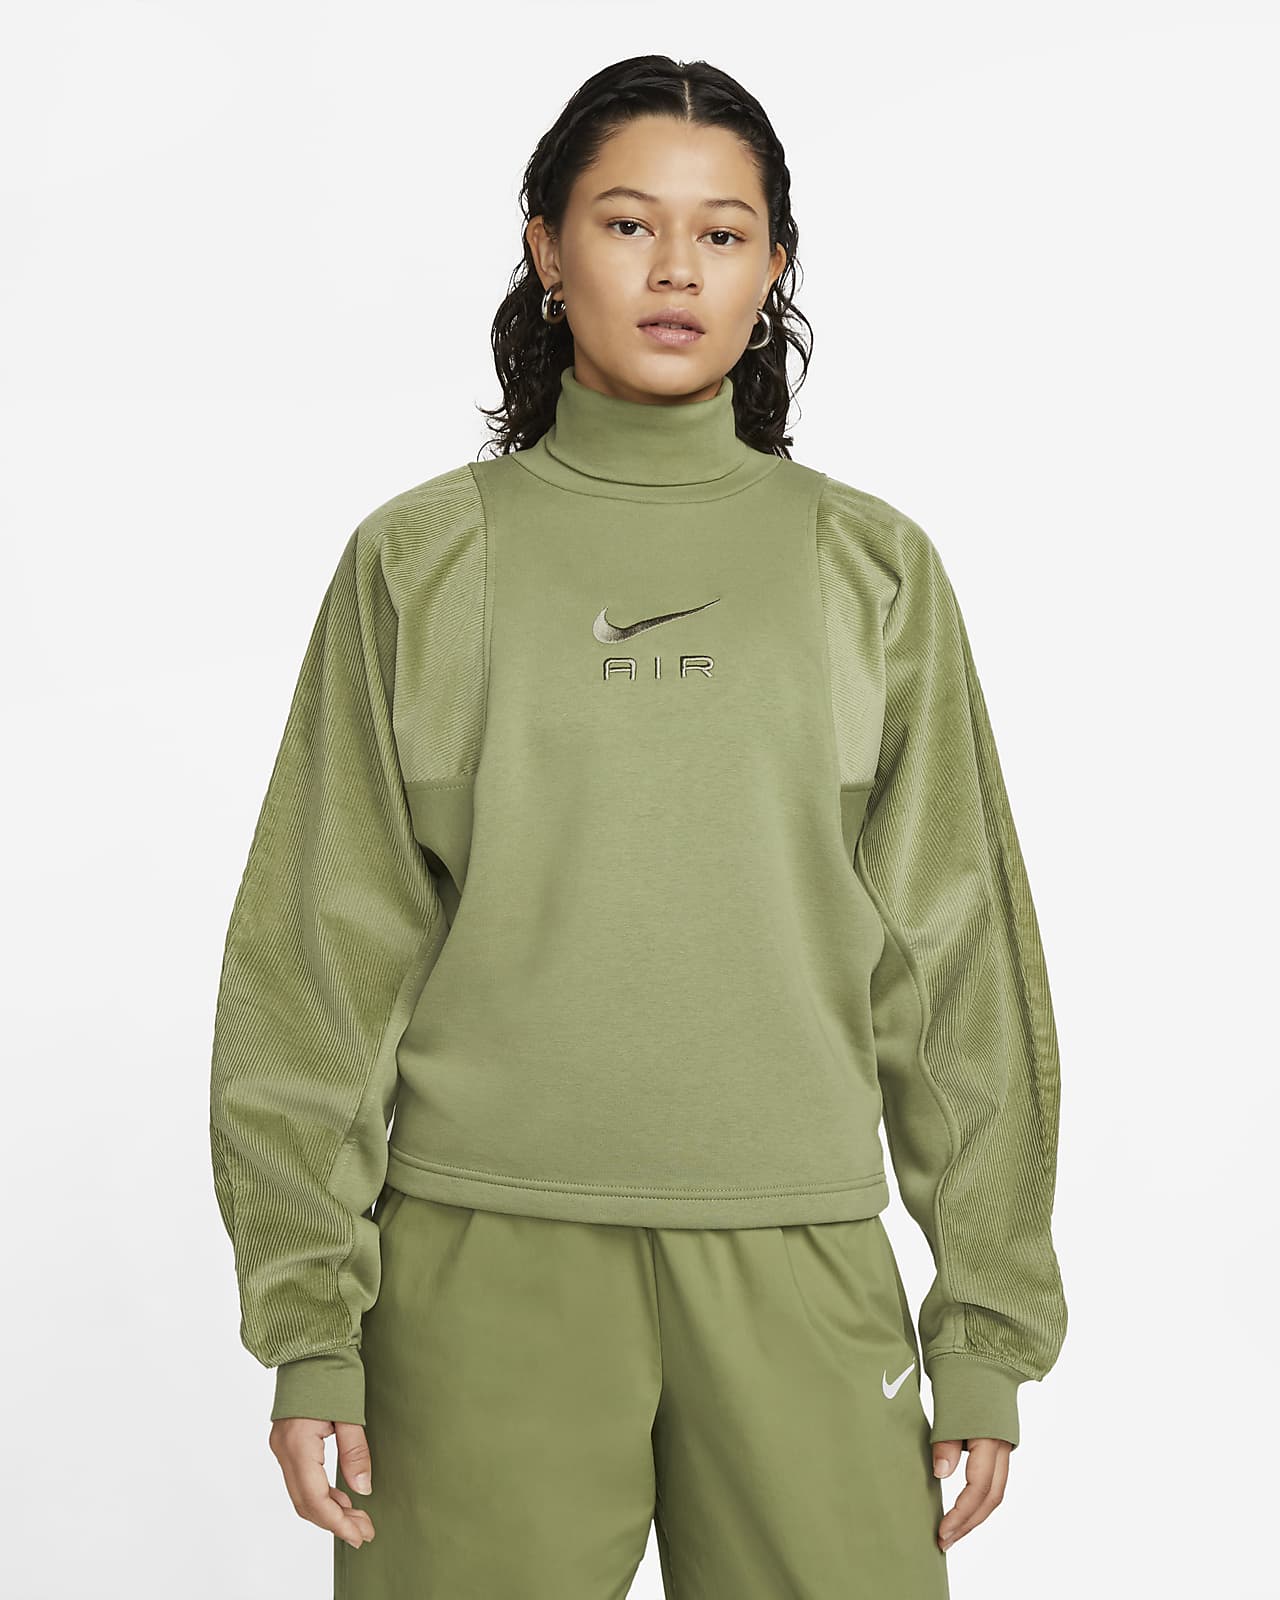 Nike Air Women's Corduroy Fleece Top. Nike NL